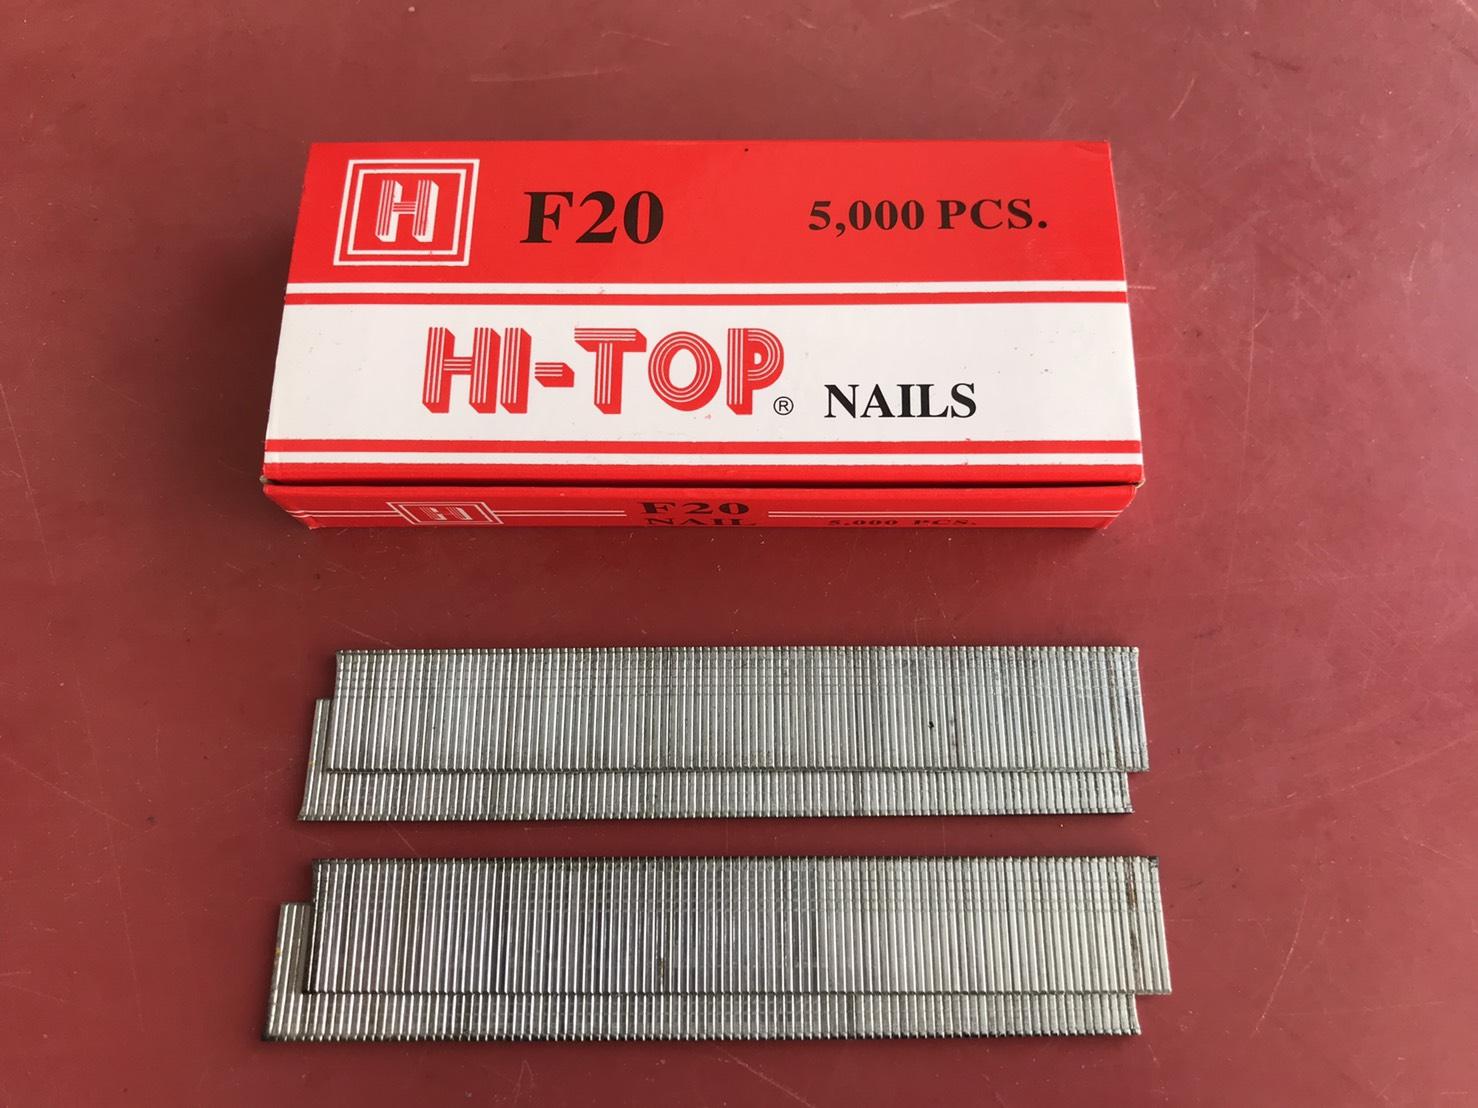 HI-TOP F20 Nails ลูกแม็กตะปูยิงไม้ แบบขาเดี่ยว 5,000pcs./กล่อง